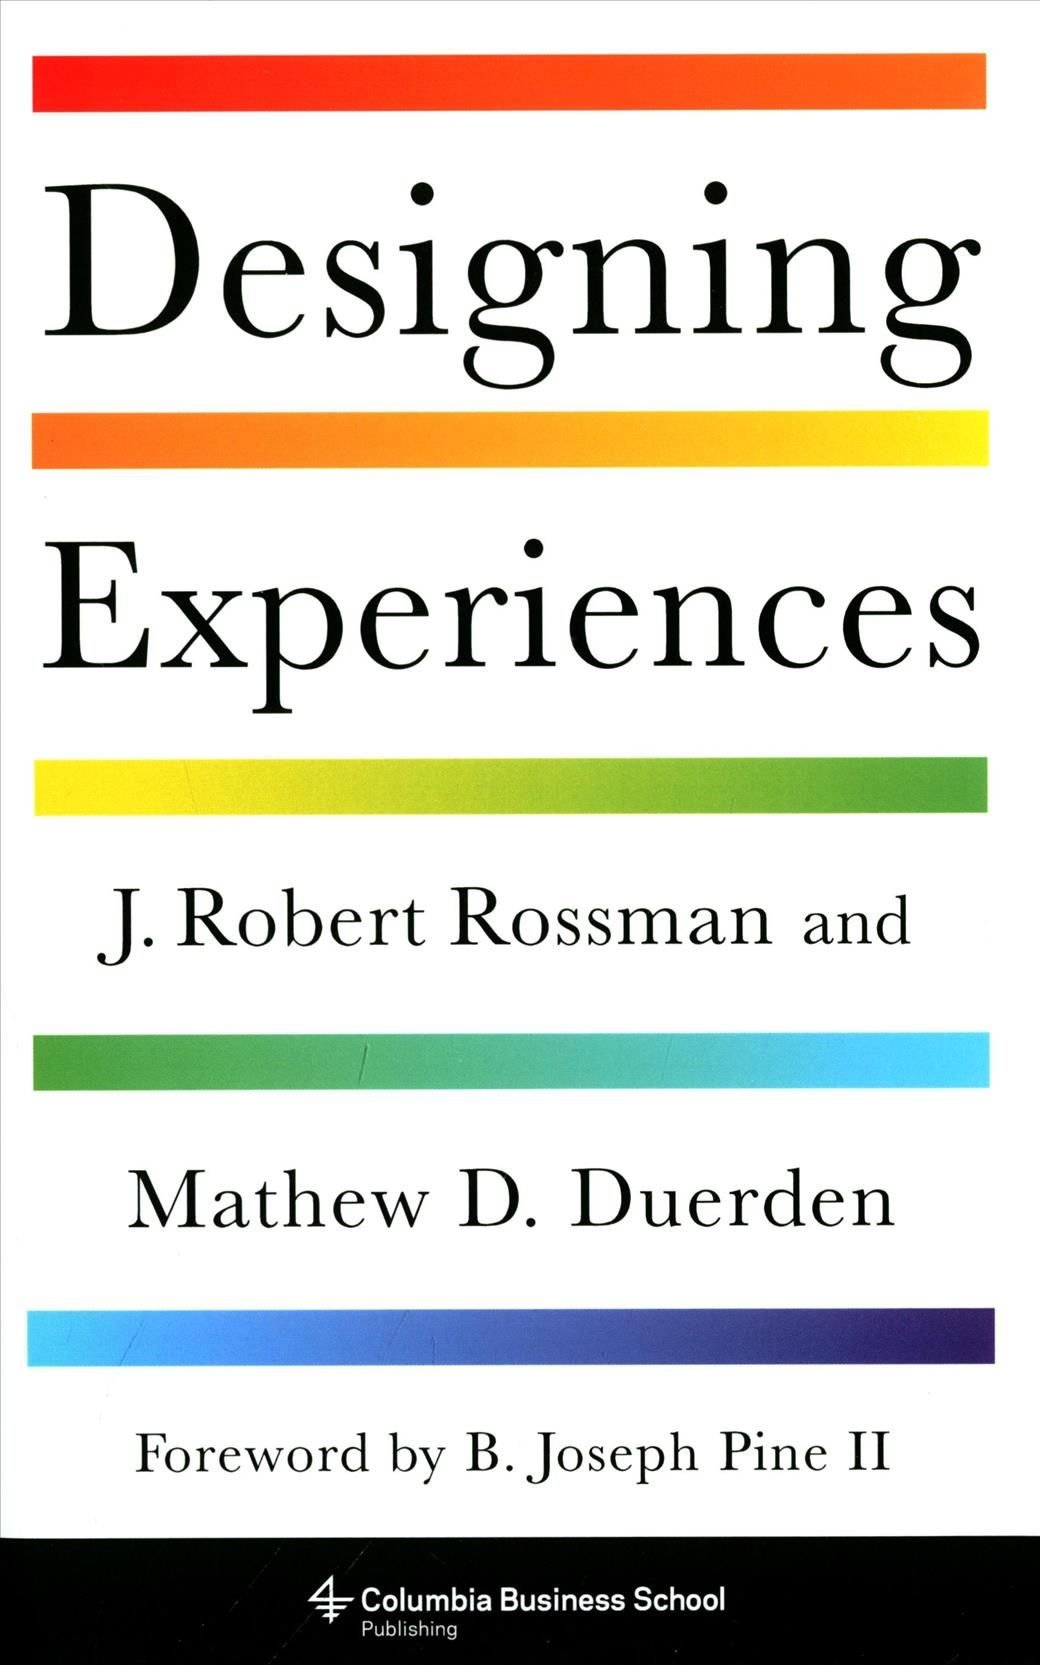 Designing Experiences by Dr. J. Robert Rossman and Dr. Matthew D. Duerden